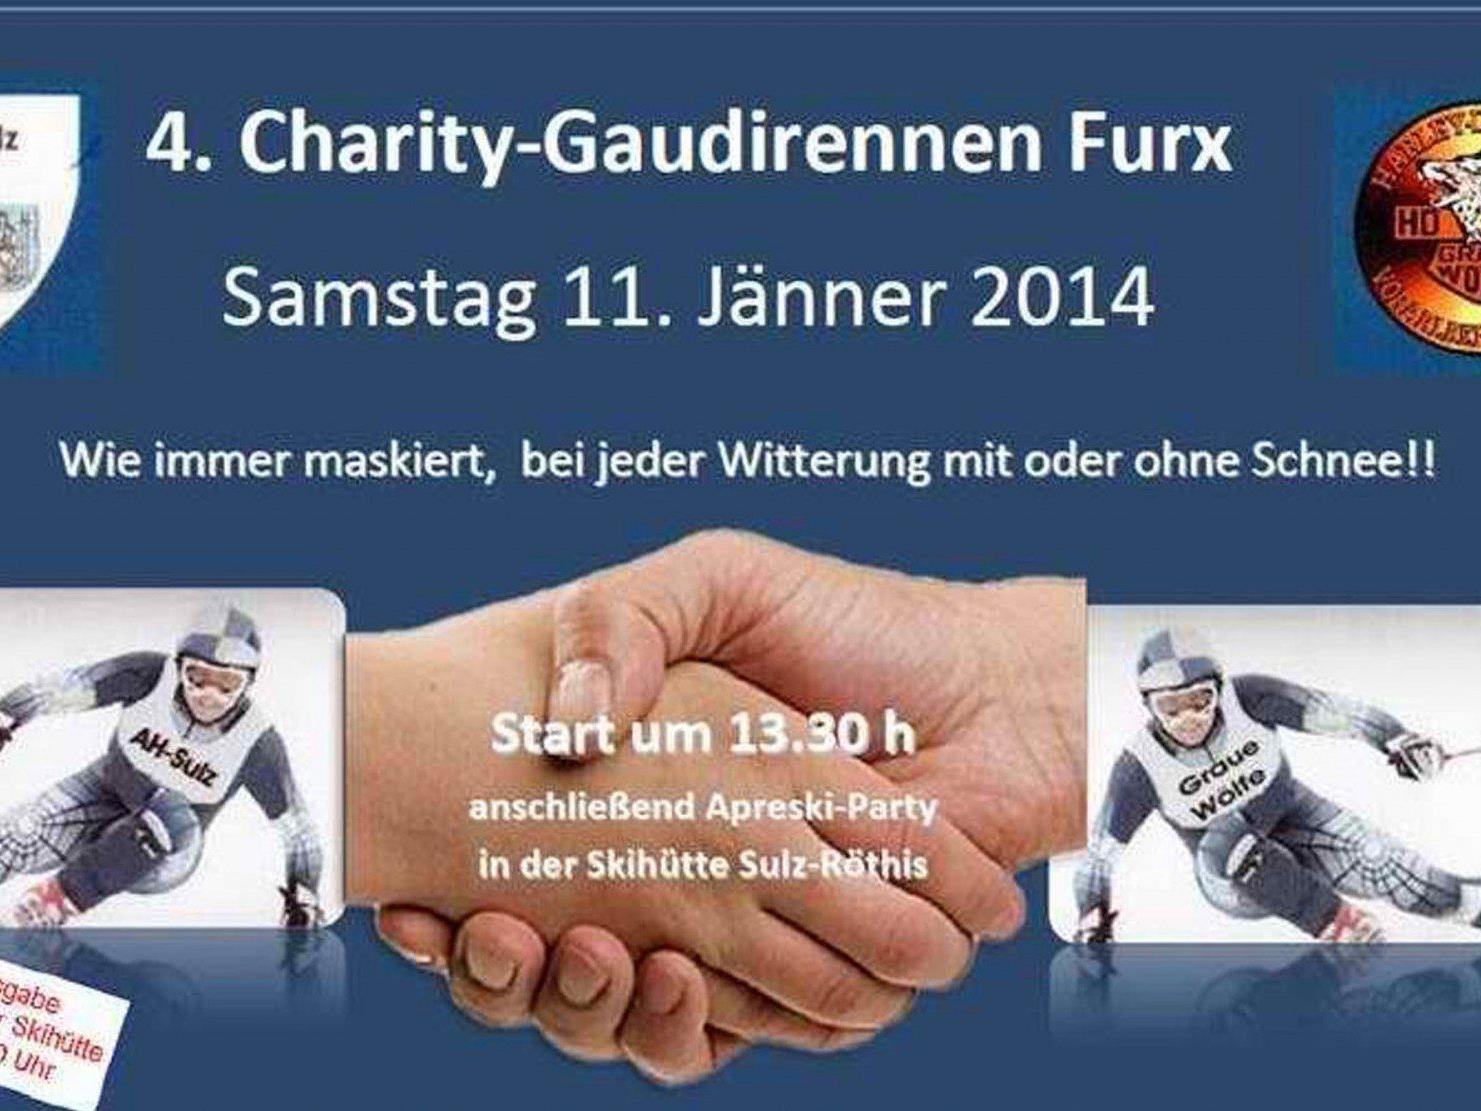 Die Altherren des FC Sulz laden zusammen mit vielen Freunden zum Charity Schirennen nach Furx!